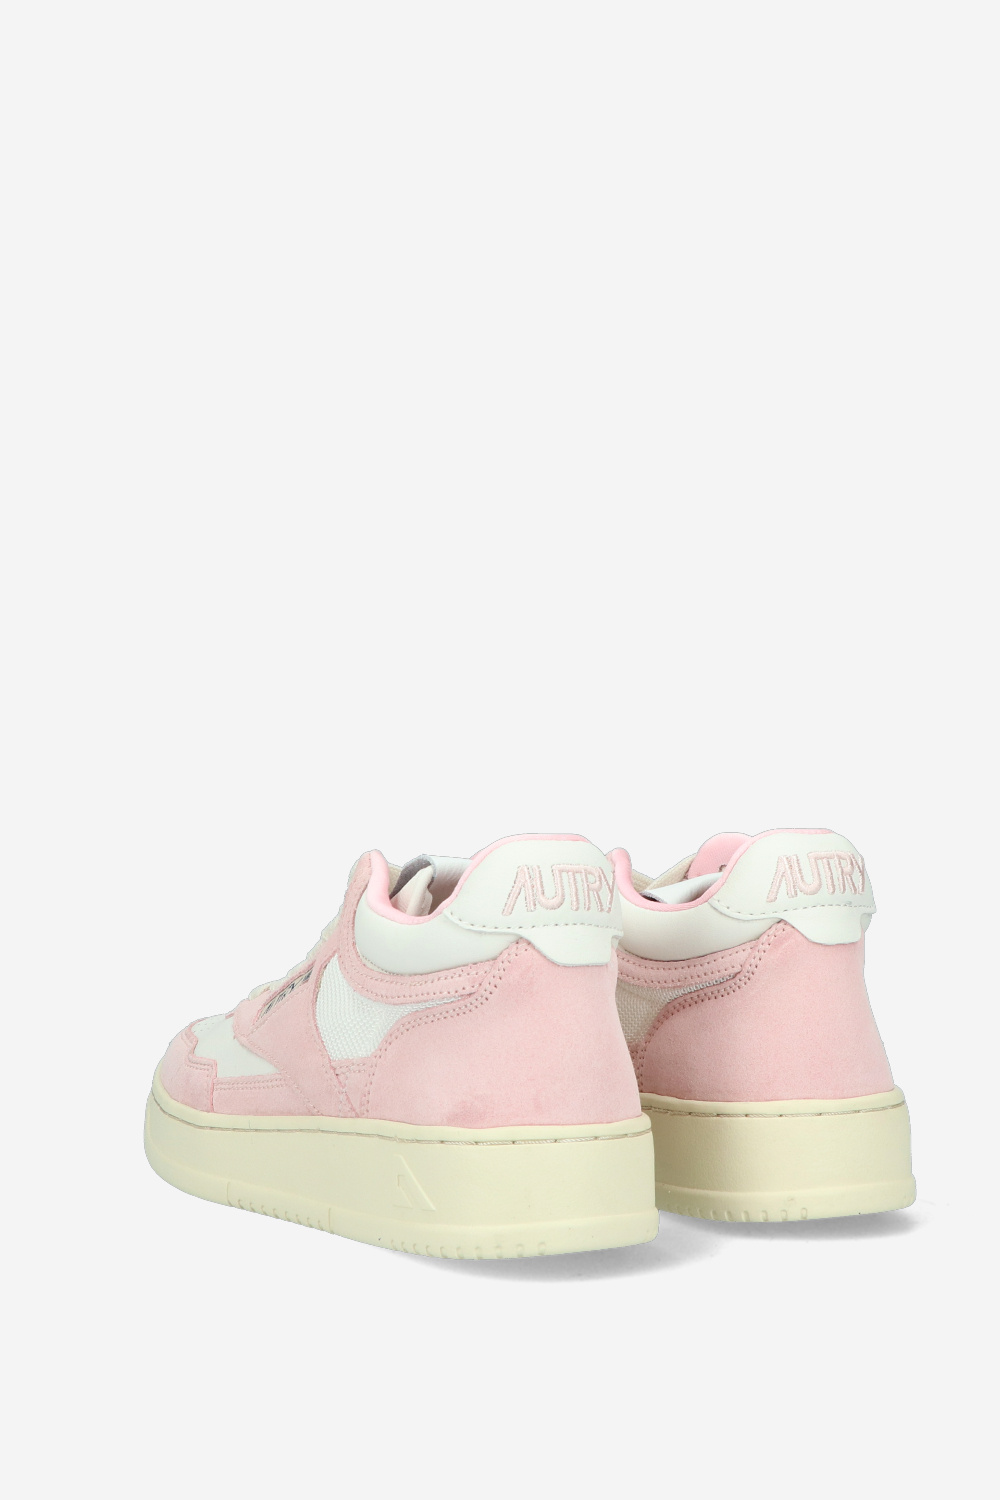 Autry Sneaker Pink